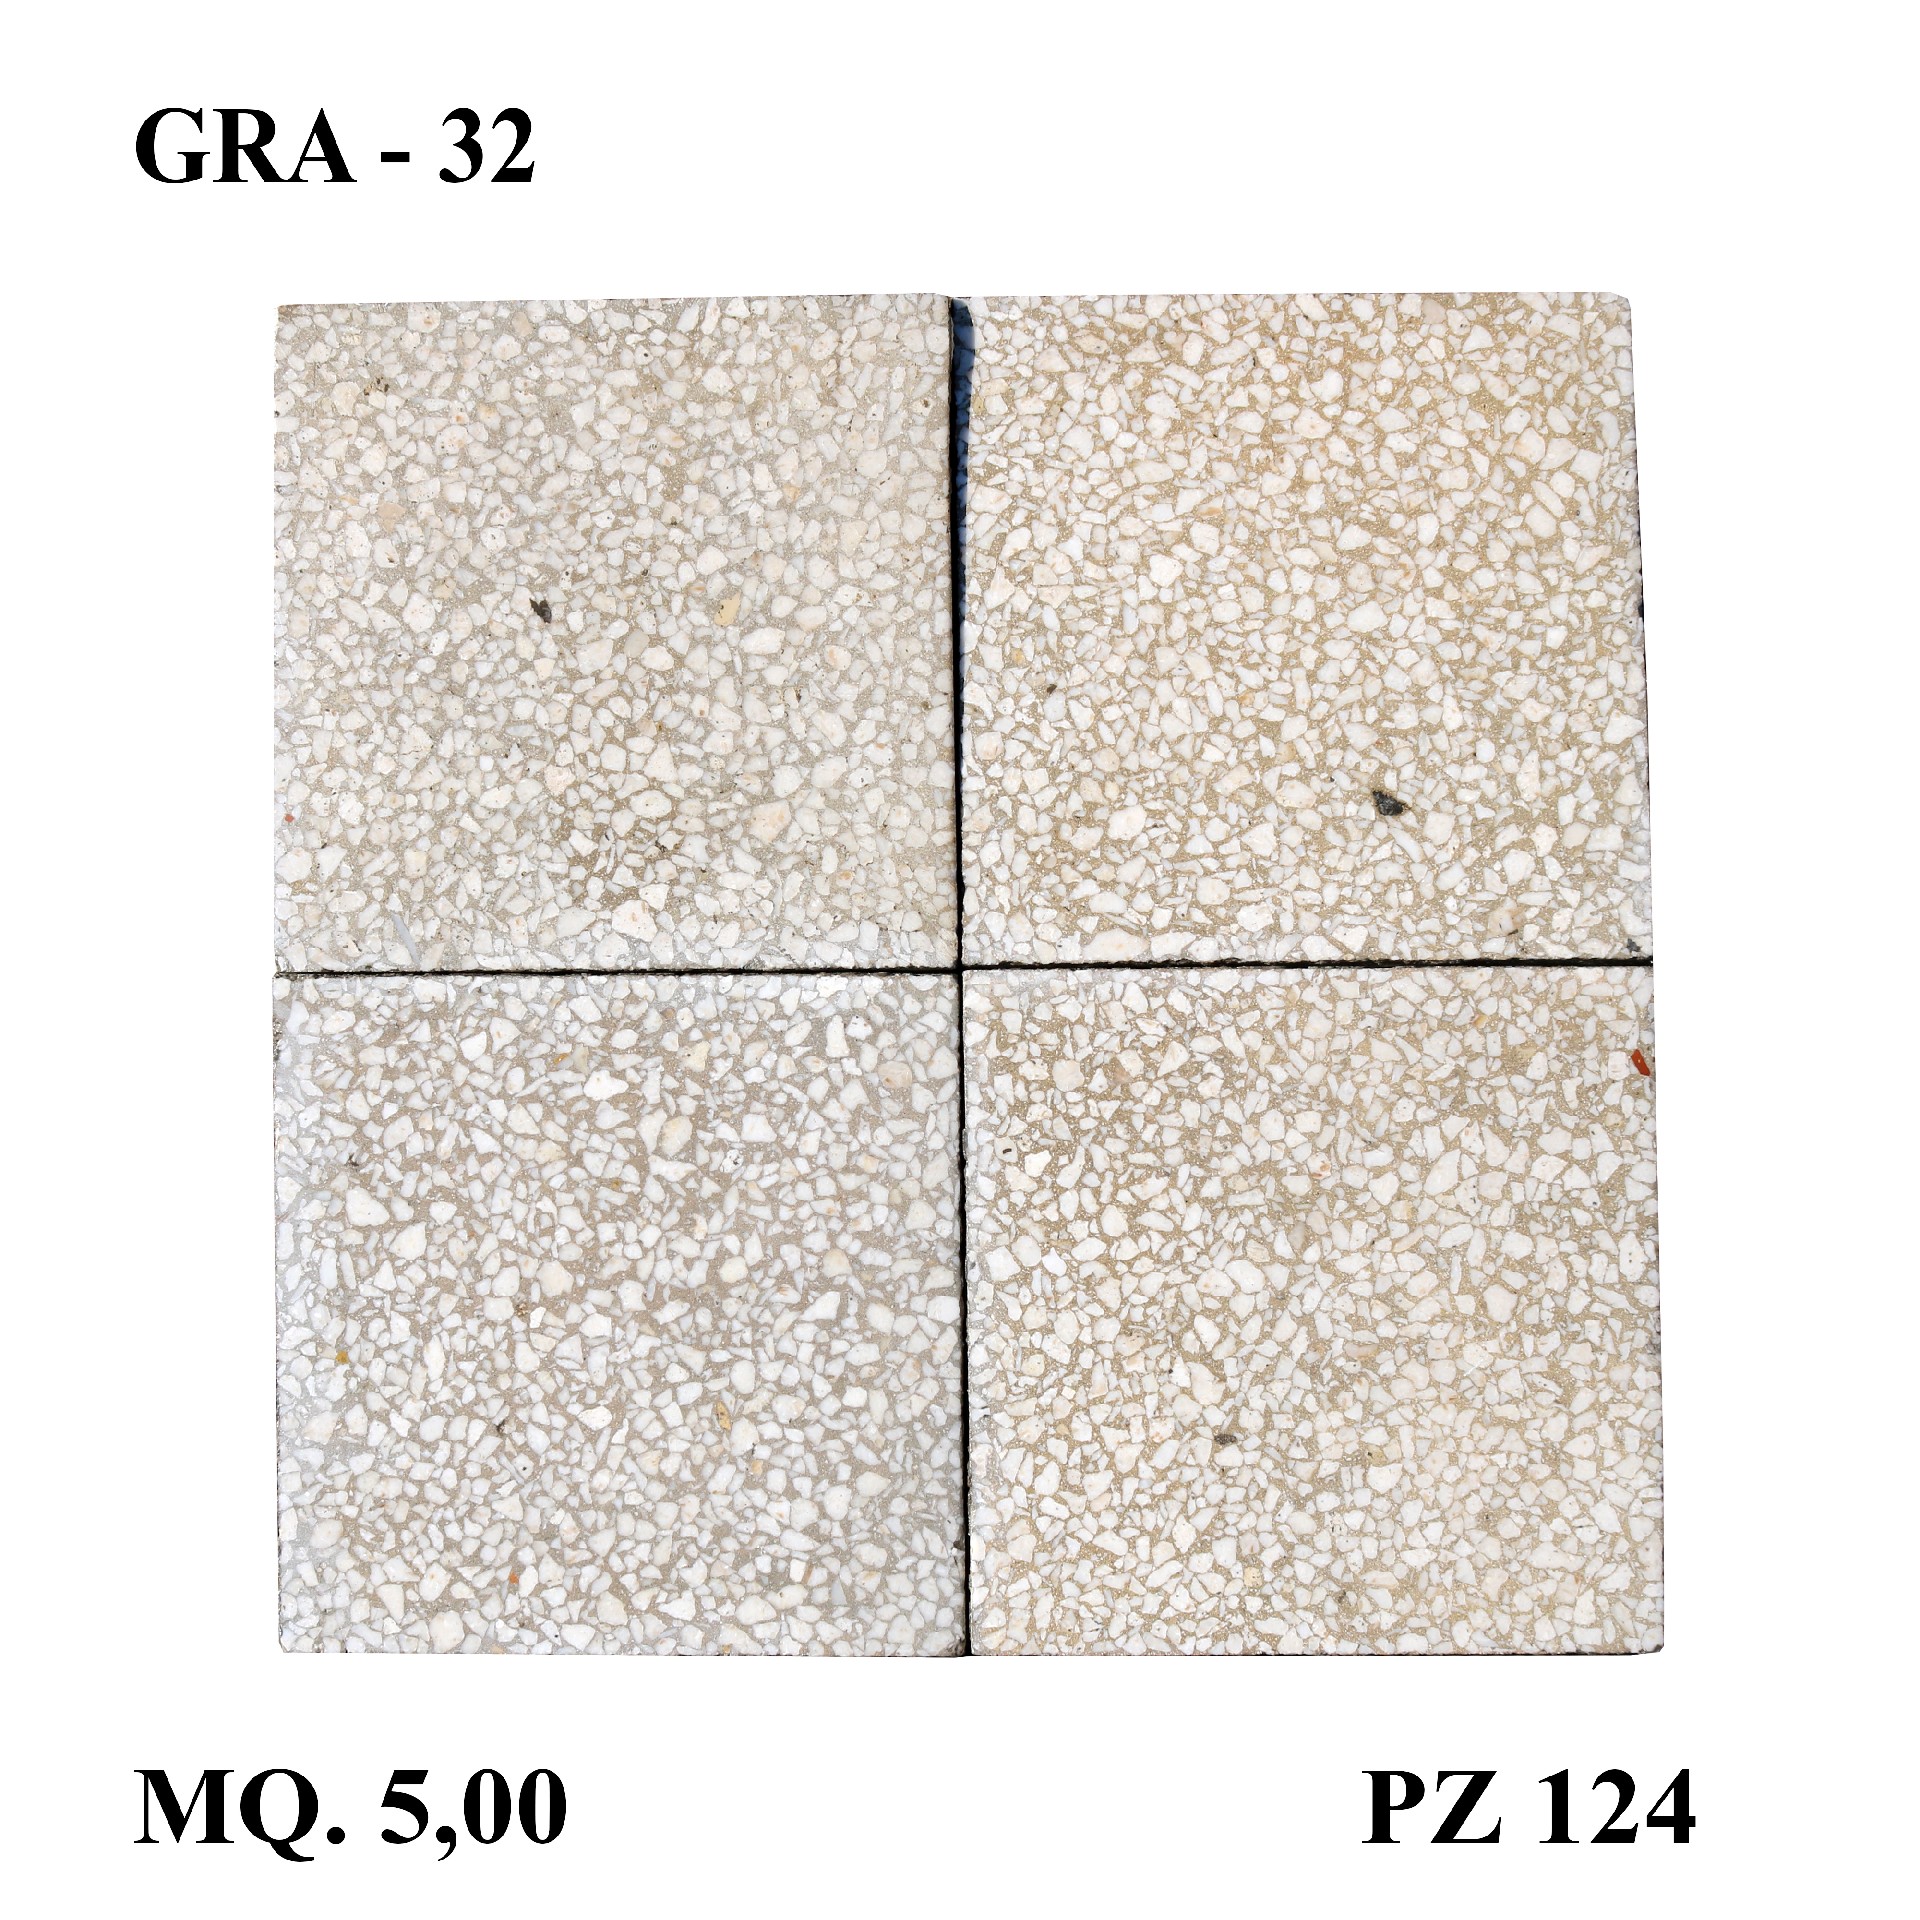 Antica pavimentazione in graniglia cm 20x20 - 1